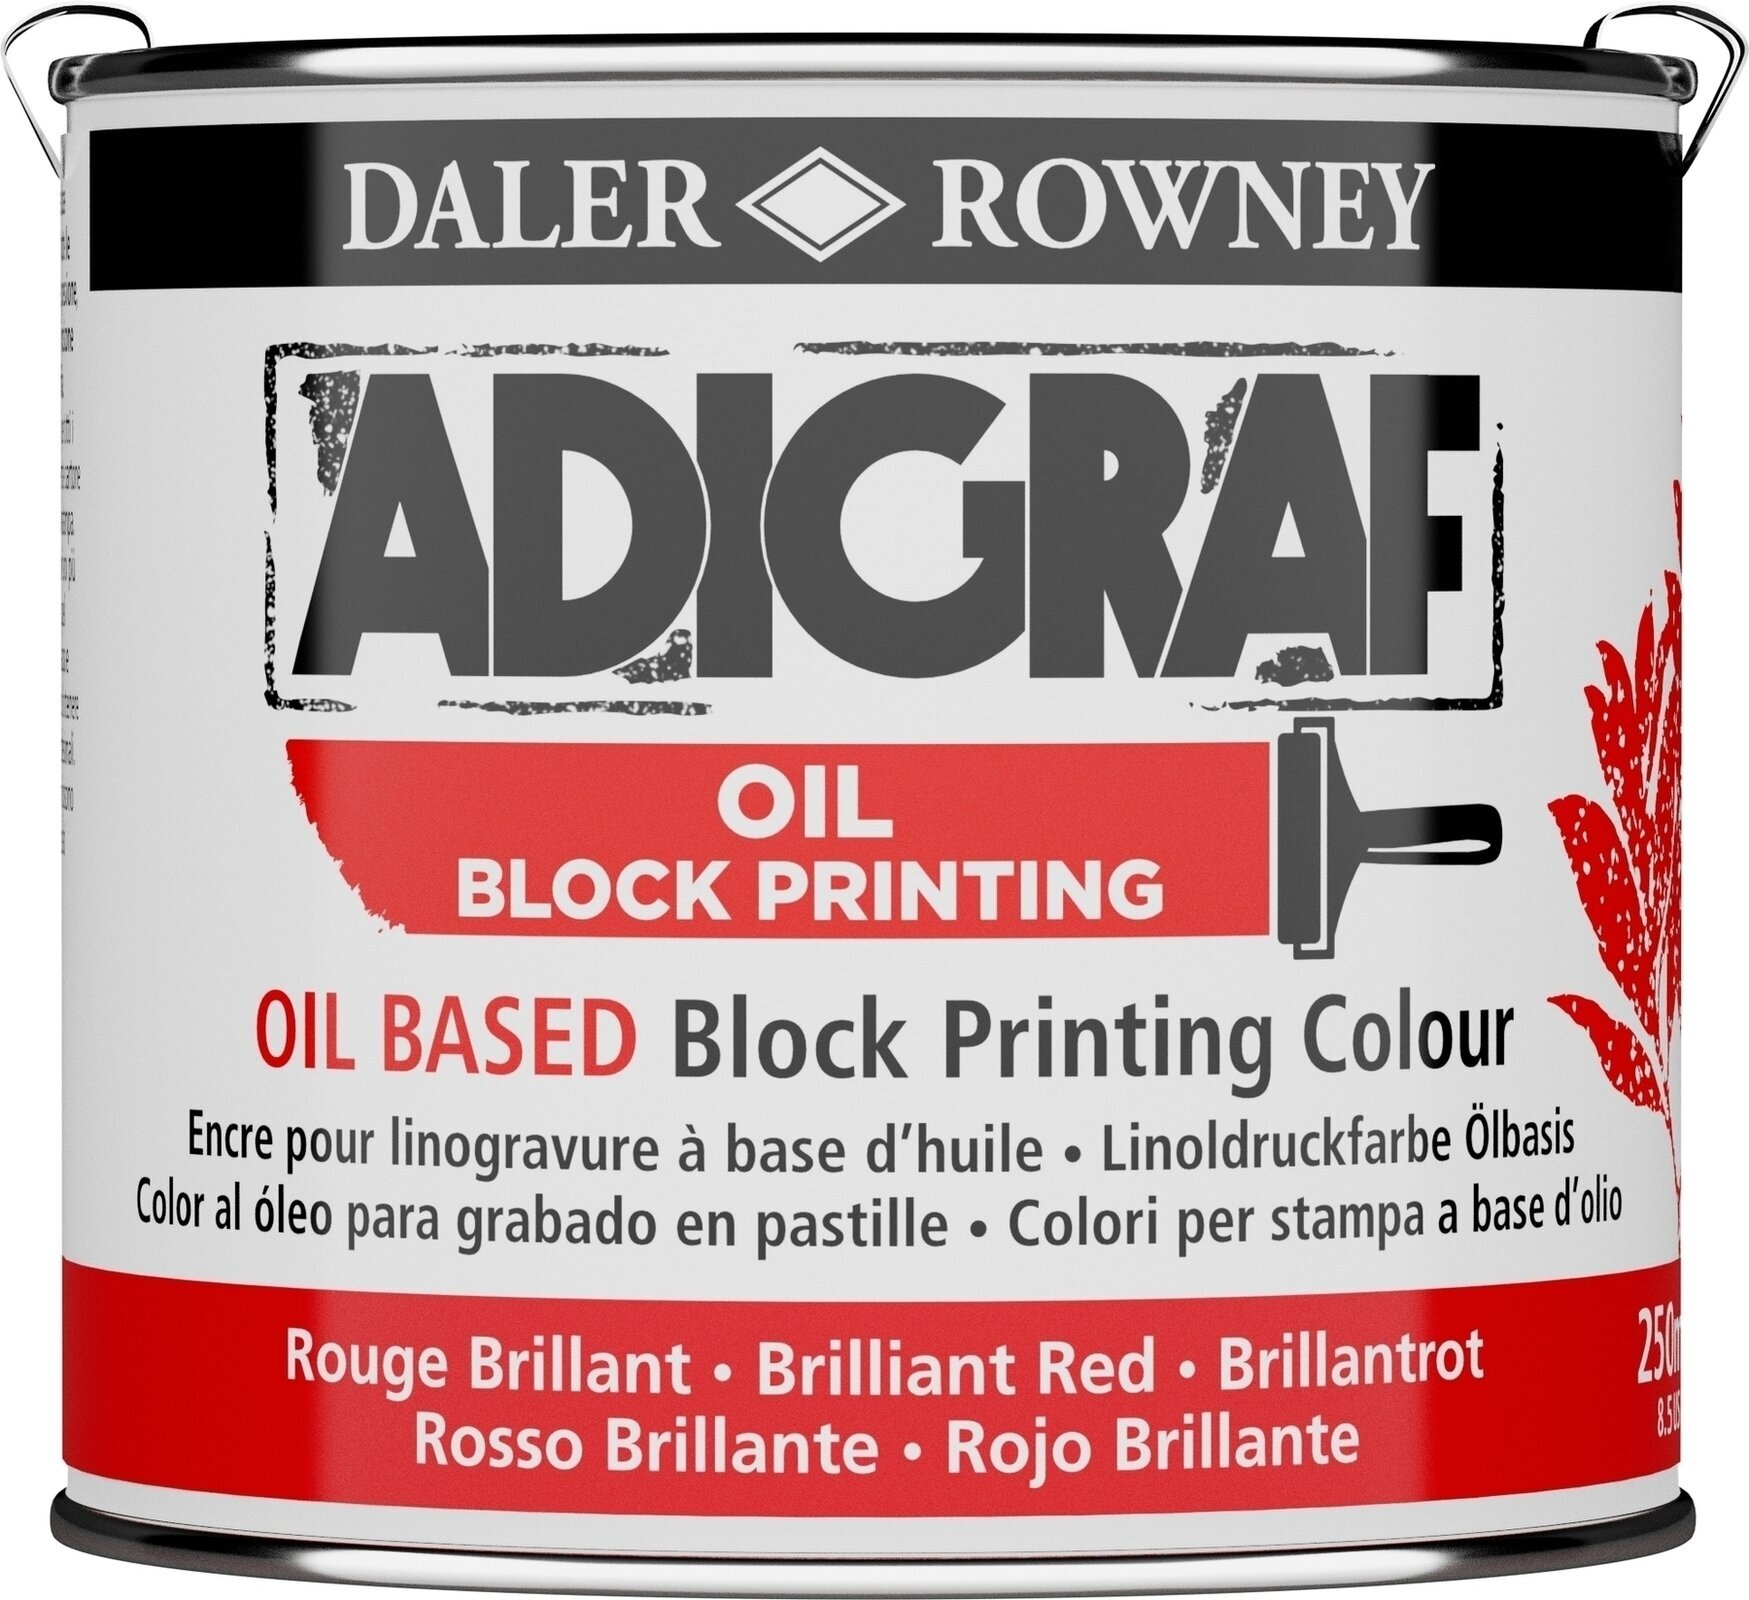 Verf voor linosnede Daler Rowney Adigraf Block Printing Oil Verf voor linosnede Brilliant Red 250 ml